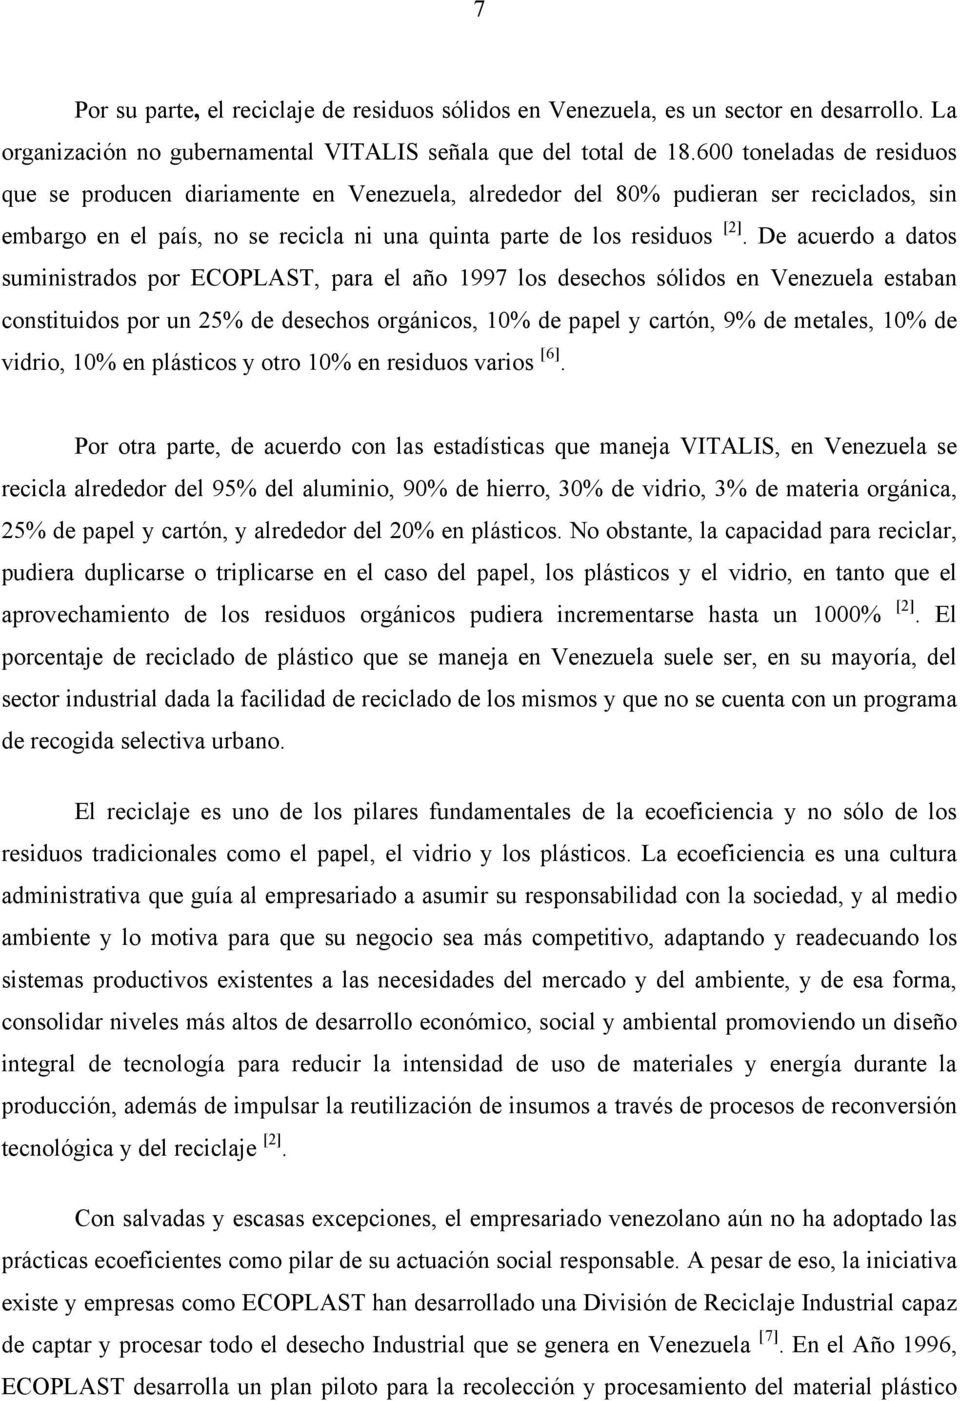 De acuerdo a datos suministrados por ECOPLAST, para el año 1997 los desechos sólidos en Venezuela estaban constituidos por un 25% de desechos orgánicos, 10% de papel y cartón, 9% de metales, 10% de